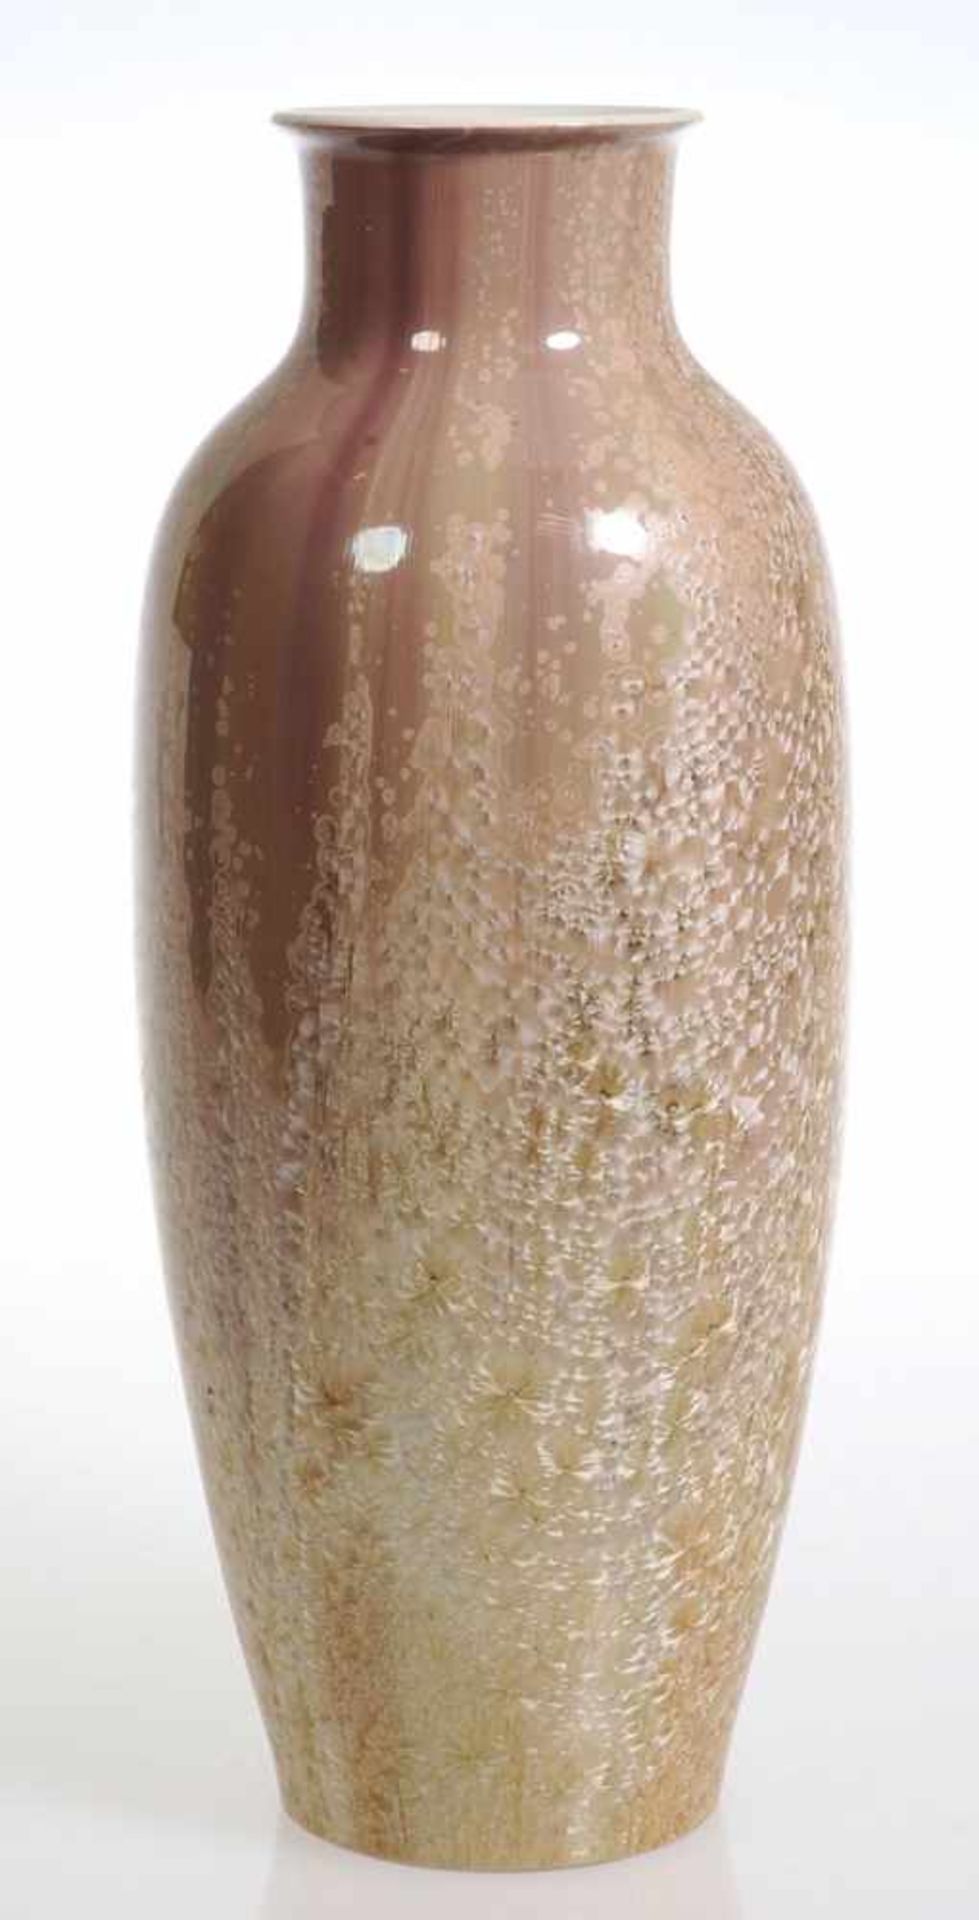 Vase mit KristallglasurKönigliche Porzellan Manufaktur (KPM), Berlin 1911. Porzellan, weiß,